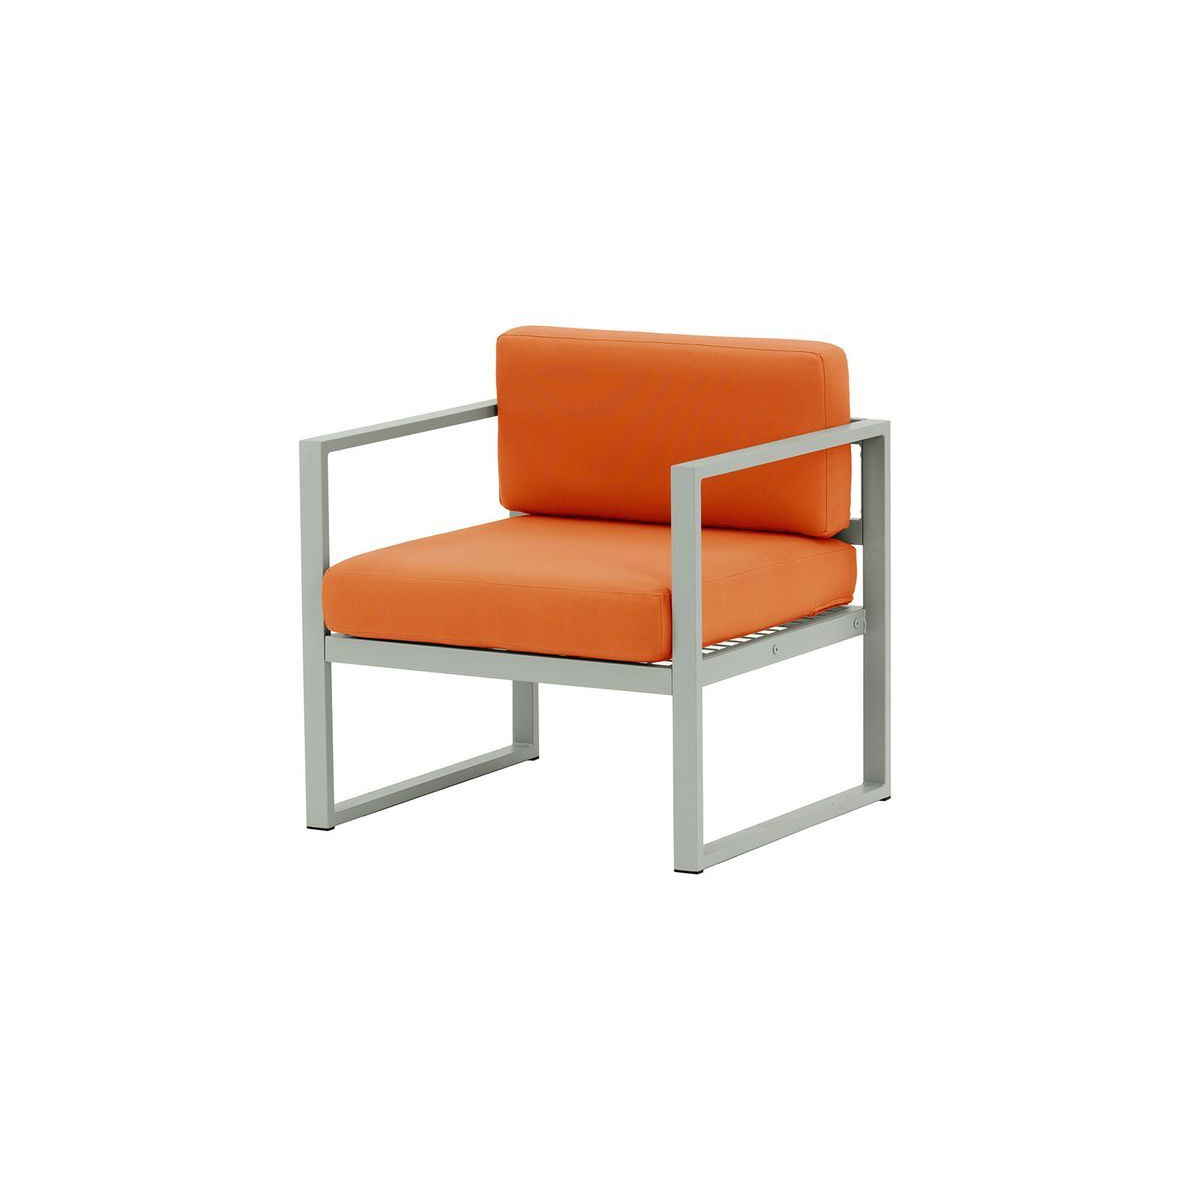 Sunset Garden Armchair, orange, Leg colour: grey steel - image 1